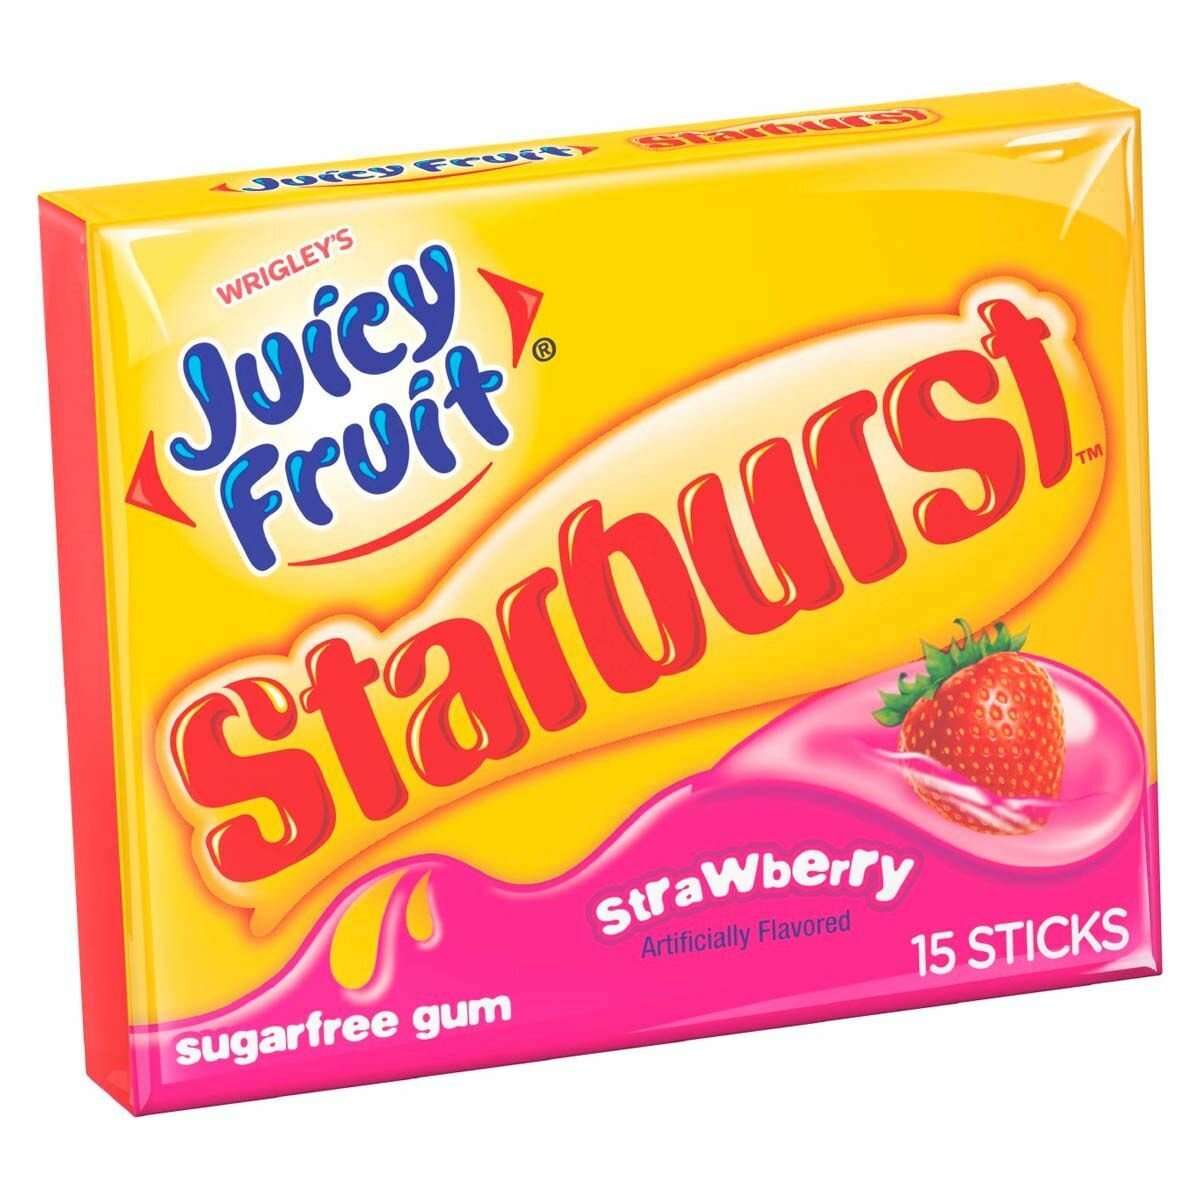 Жевательная резинка Wrigley's Juicy Fruit Starburst Strawberry со вкусом клубники (США), 15 пластинок